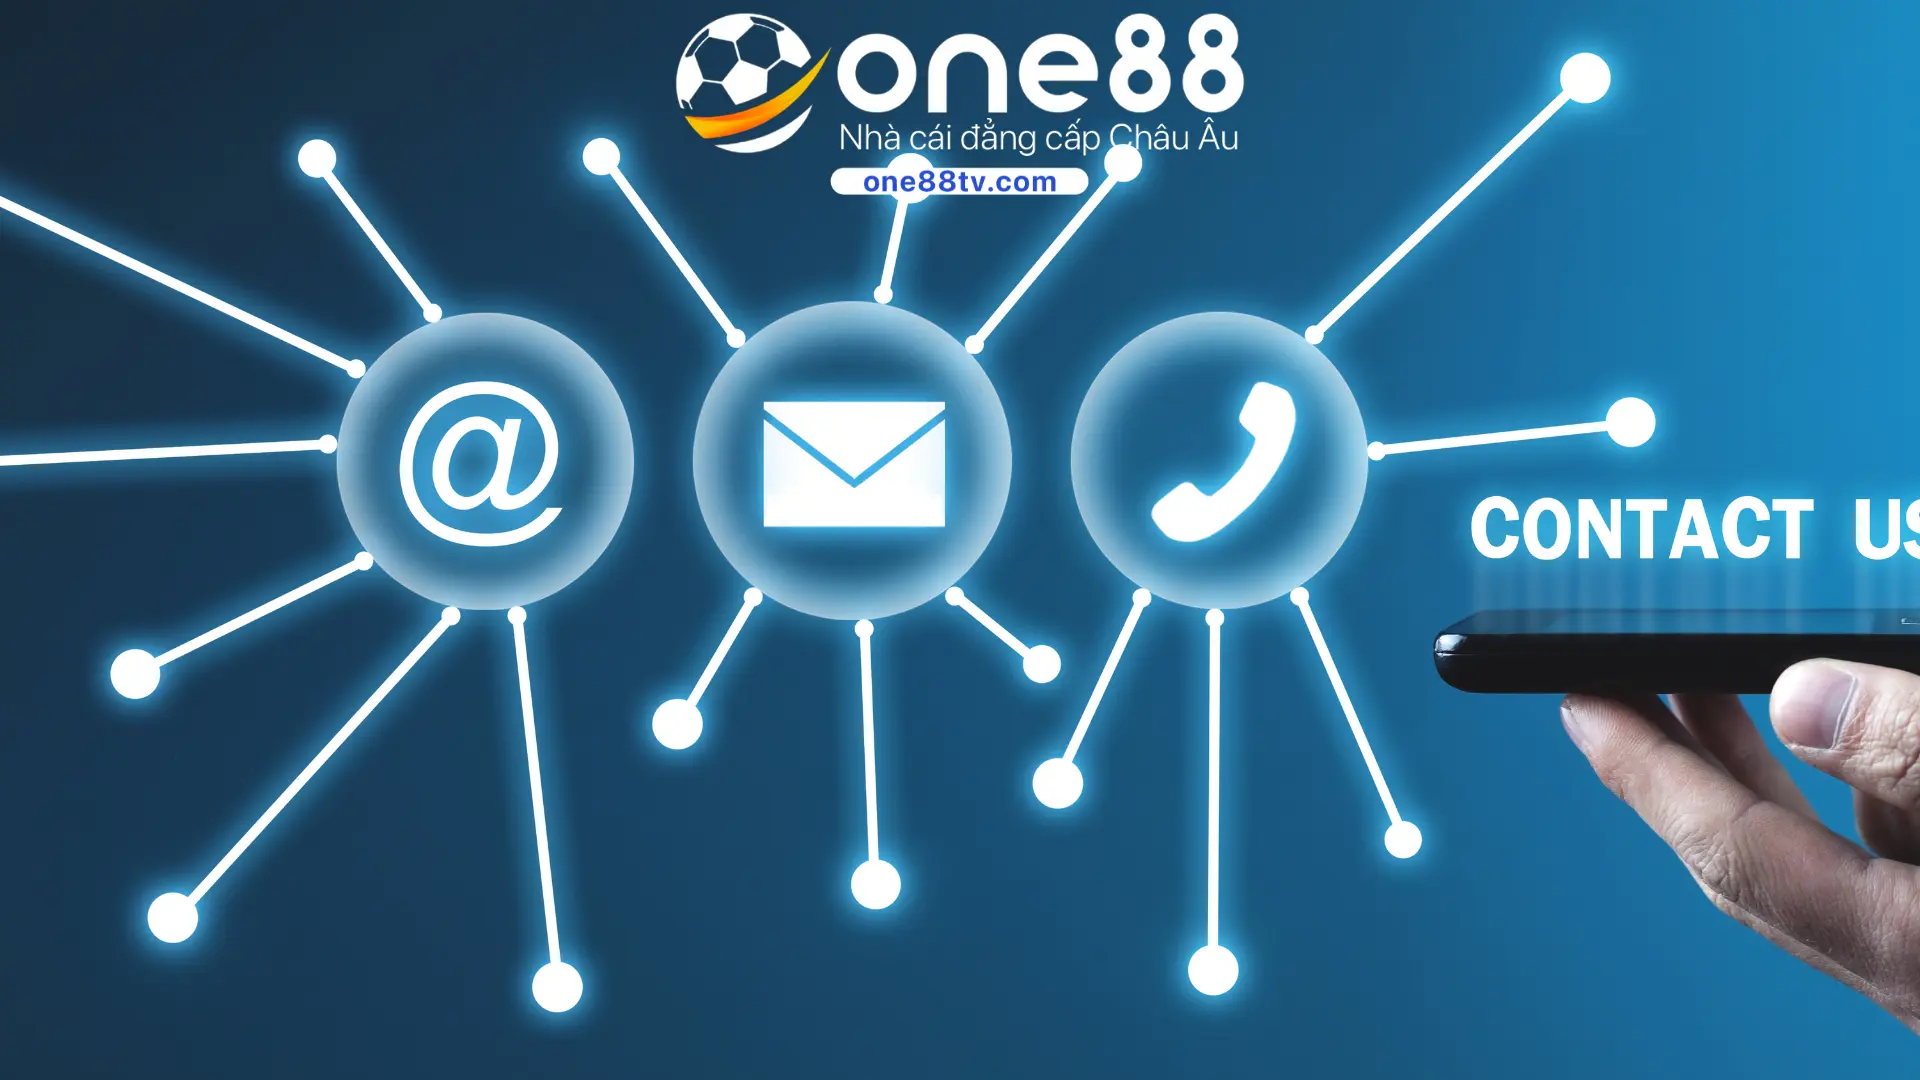 Tổng hợp phương thức kết nối với One88 được sử dụng nhiều nhất